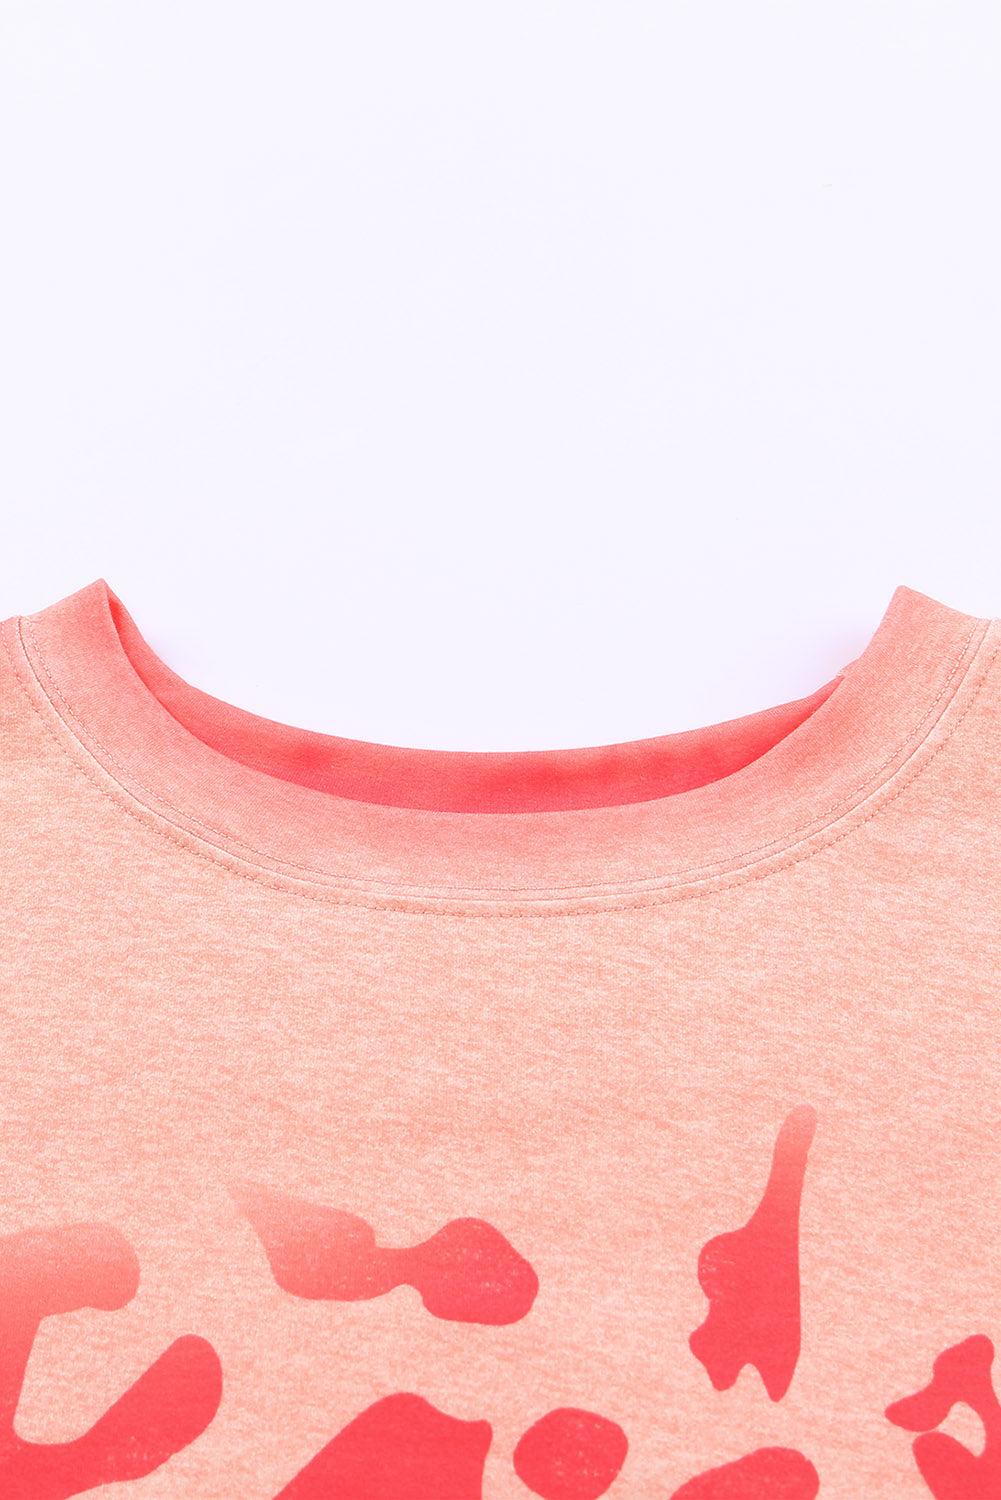 Pink Bleached Cheetah Print Sweatshirt